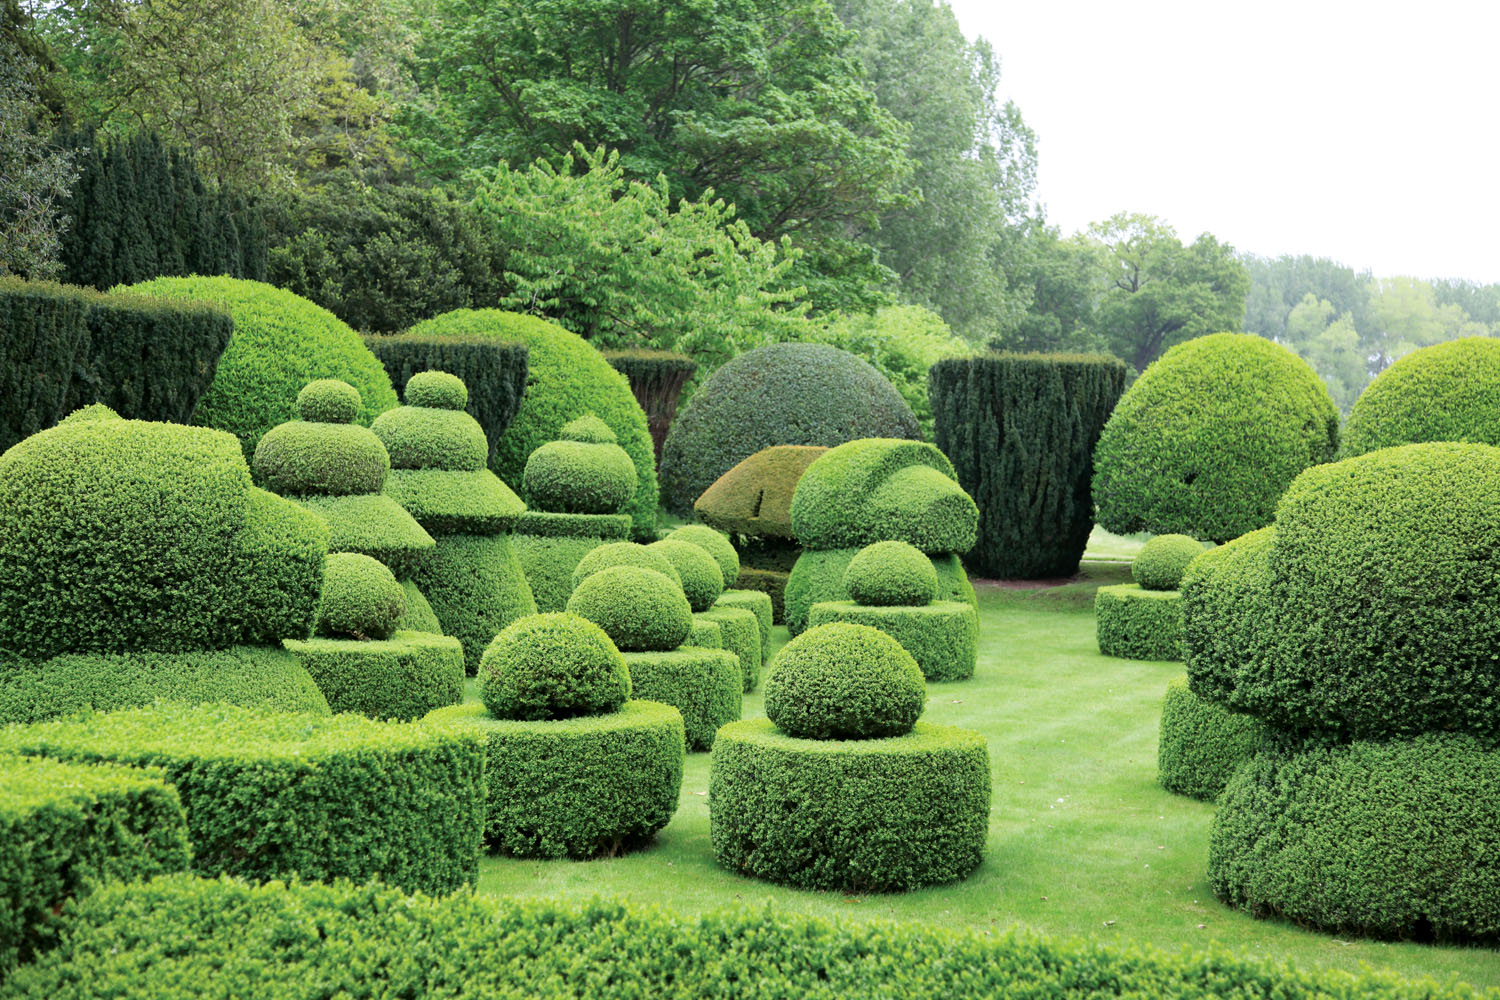 Haseley Court, topiary garden